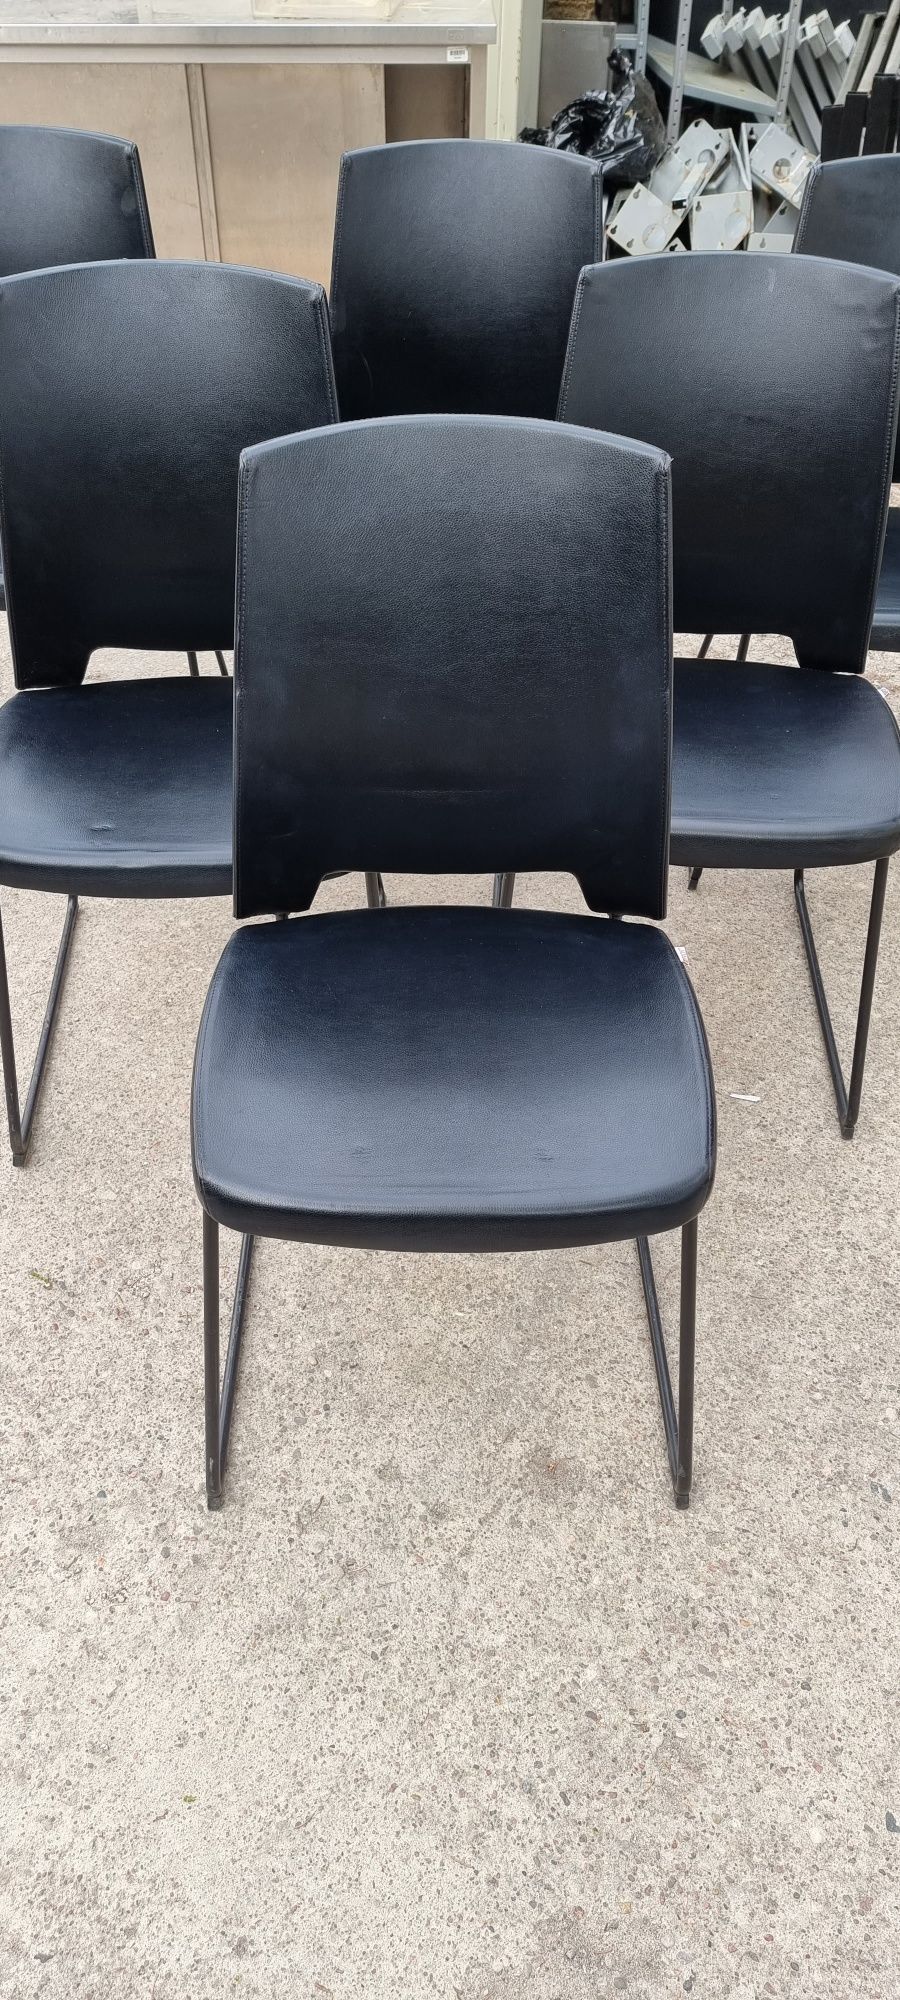 Fotel konferencyjny Profim Arca czarny fotele